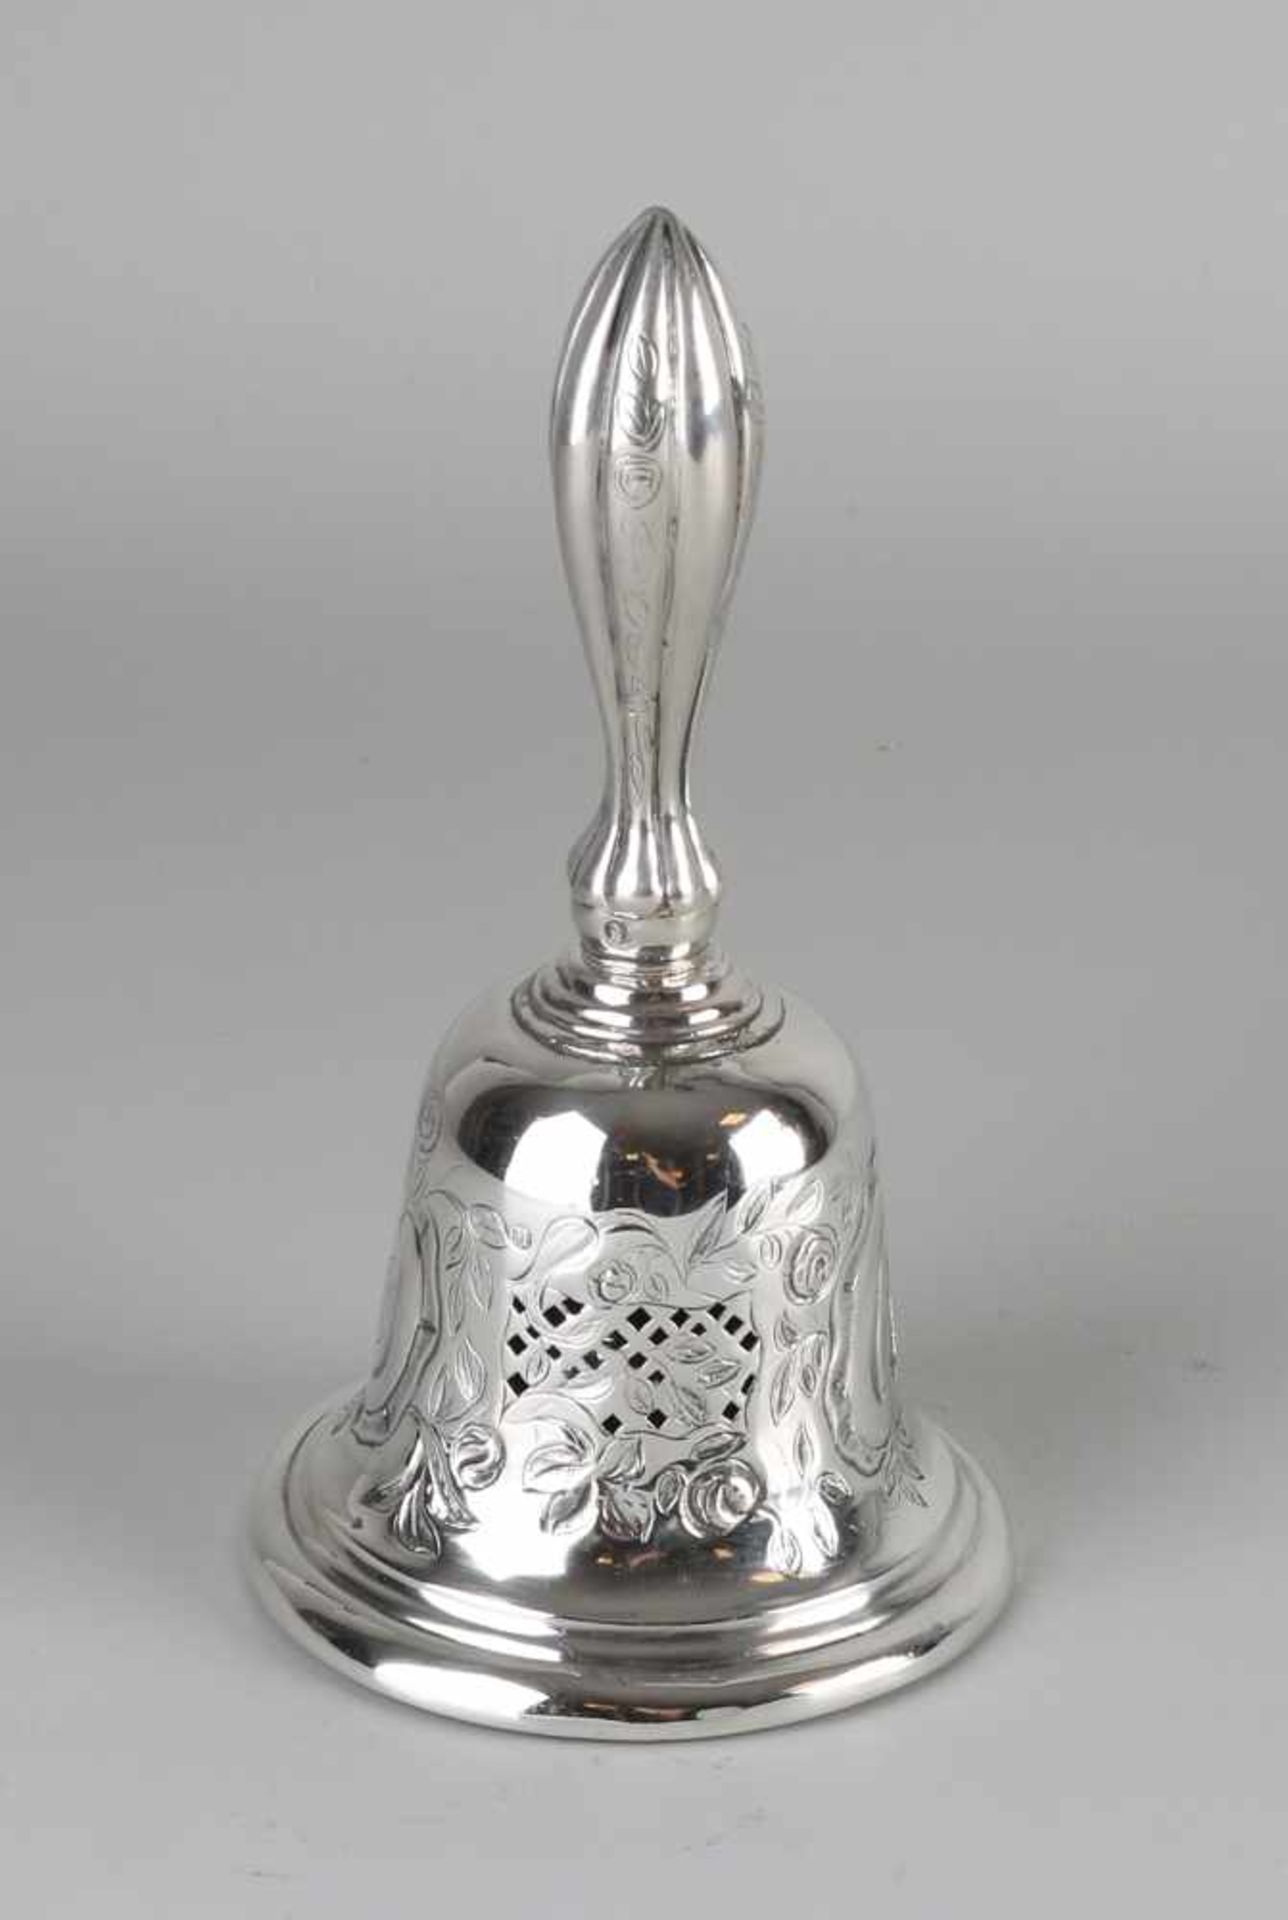 Silber Tischglocke, 833/000, mit Metallinnenglocke. Durchbrochene runde Innenglocke mit